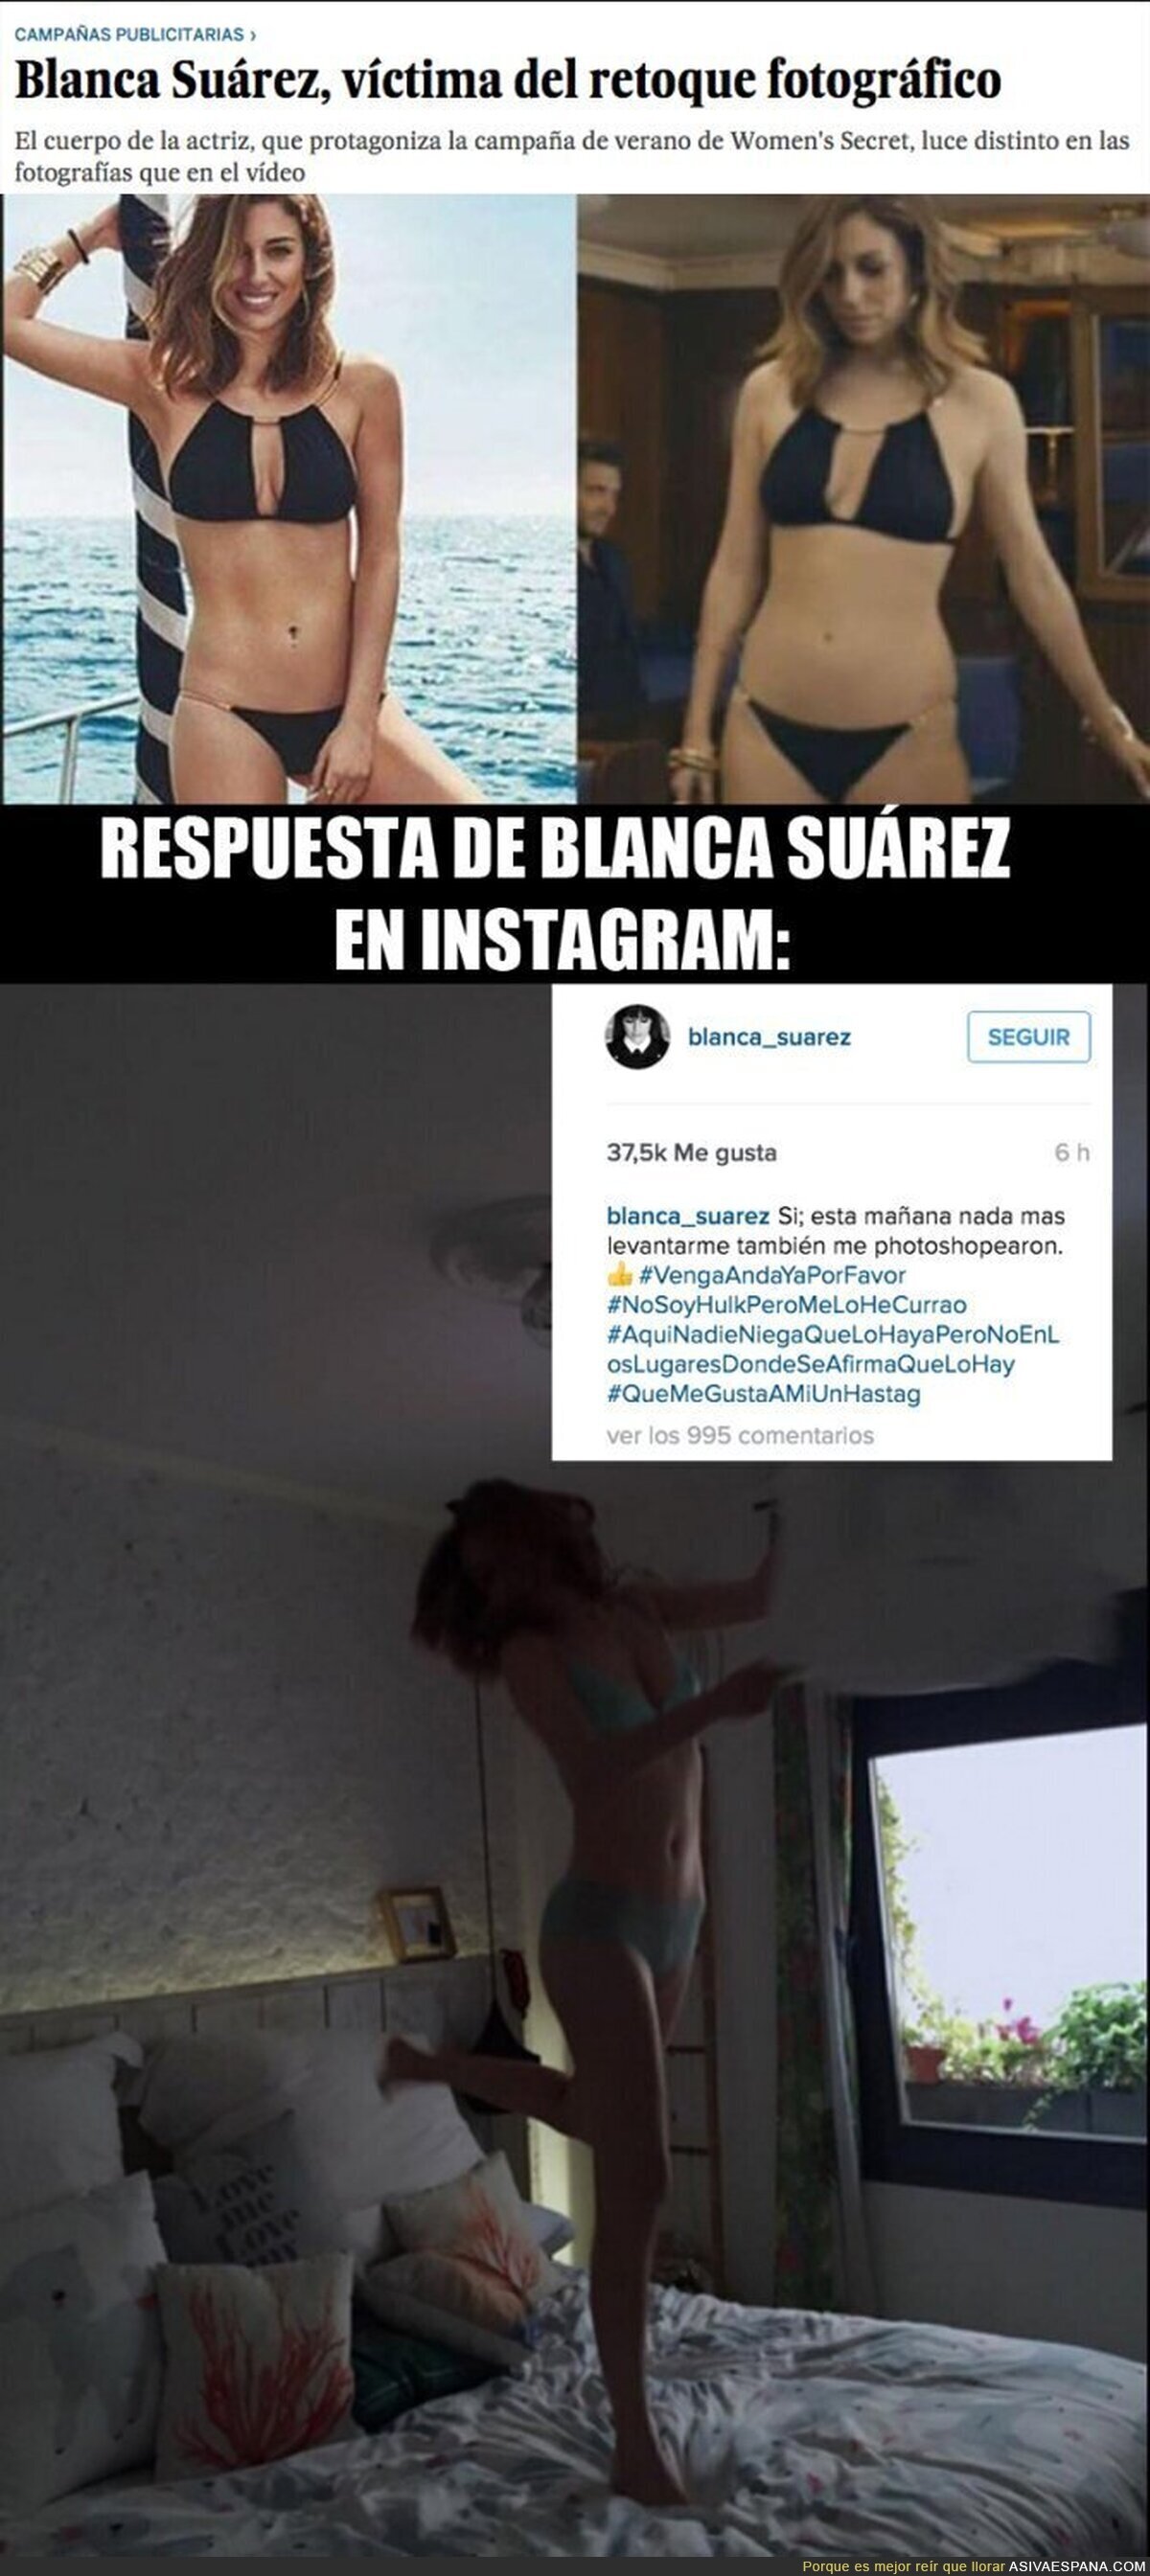 ¡Ojo! Blanca Suárez responde en Instagram sobre las polémicas fotos retocadas de Women'secret